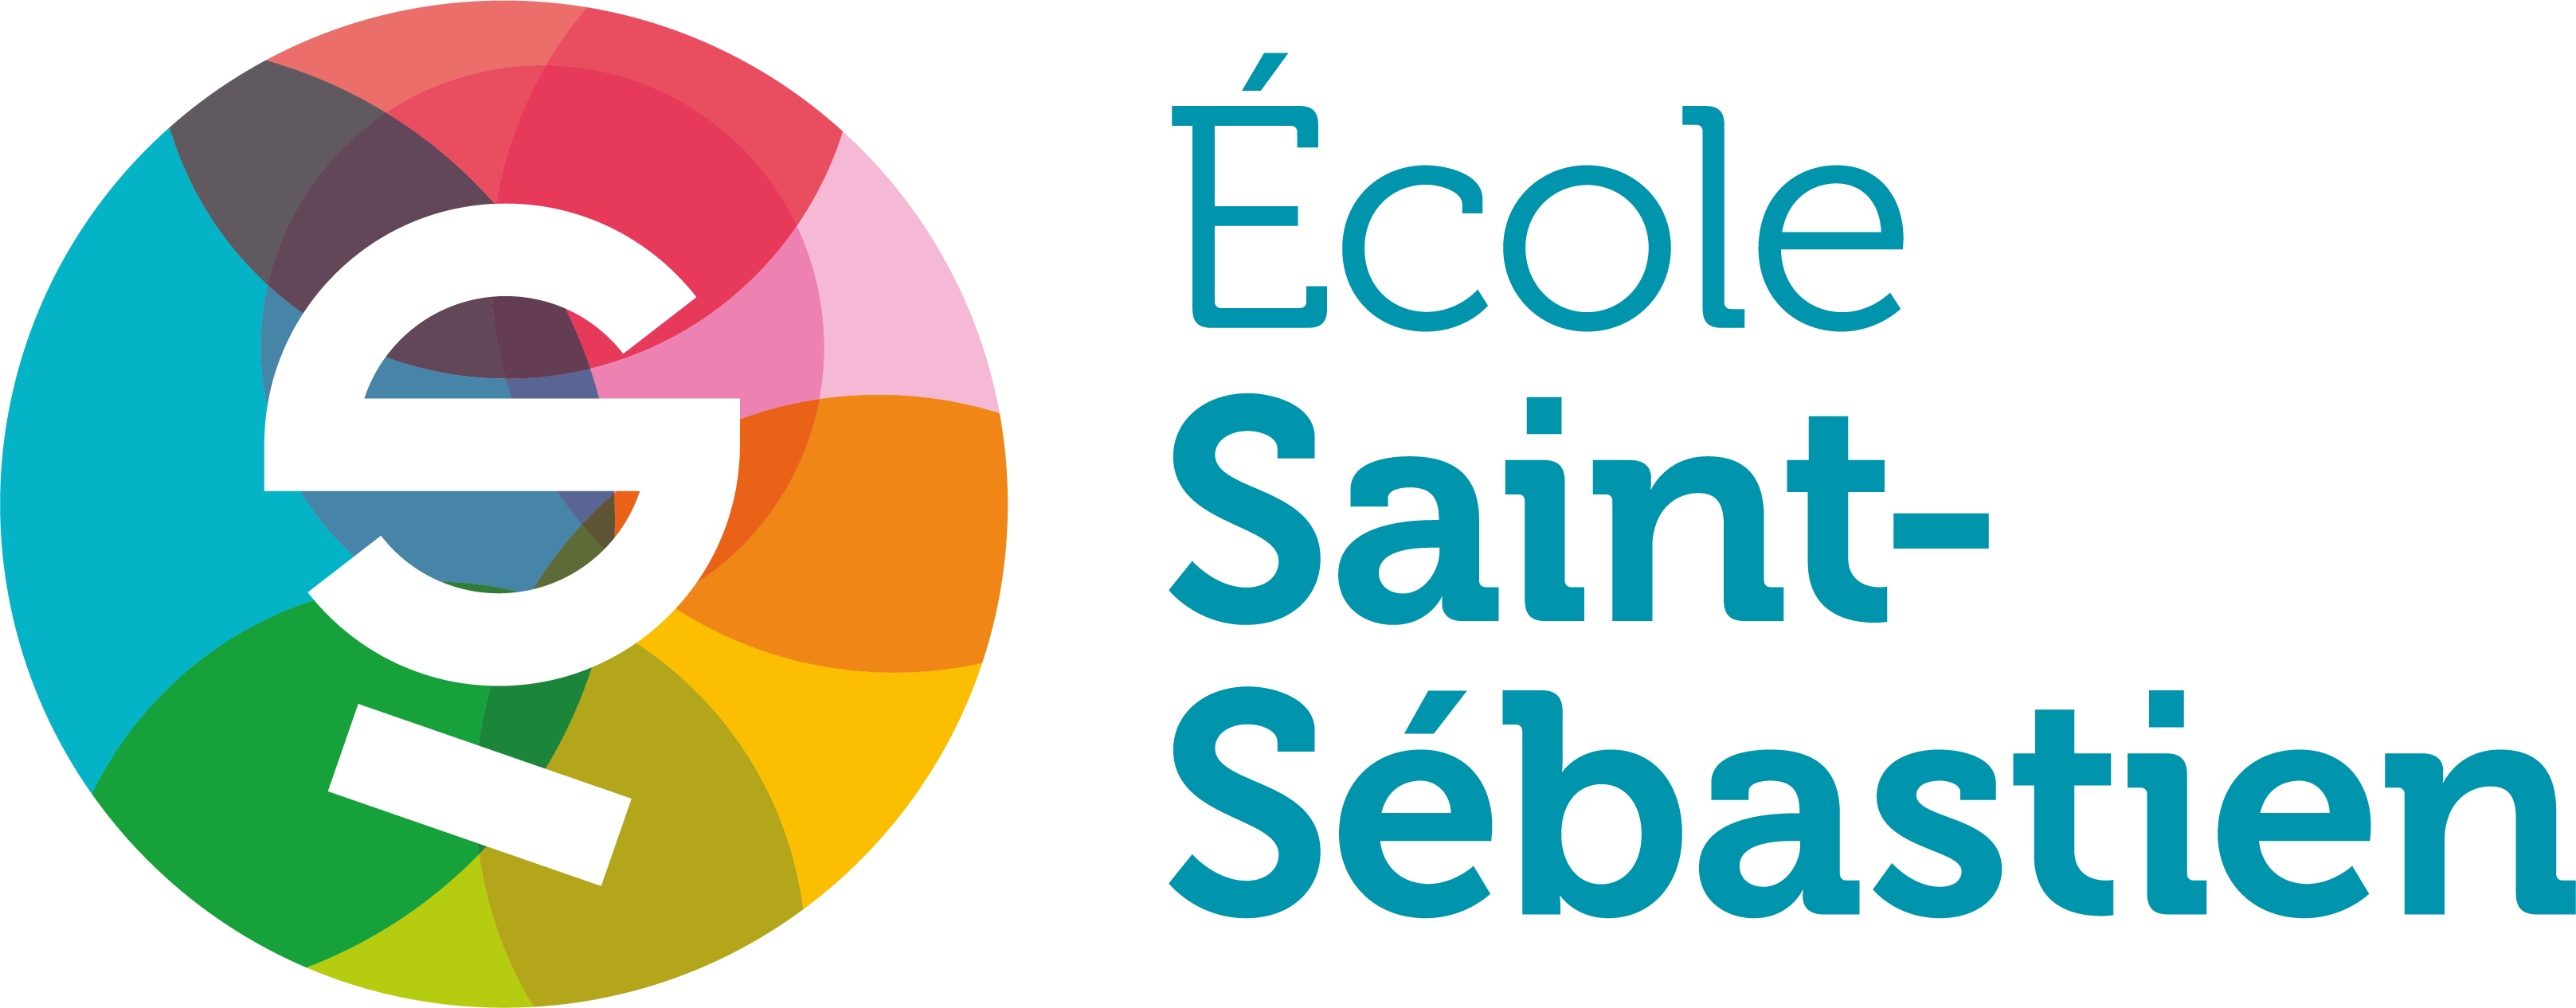 École Saint-Sébastien - Création logo - Periskop